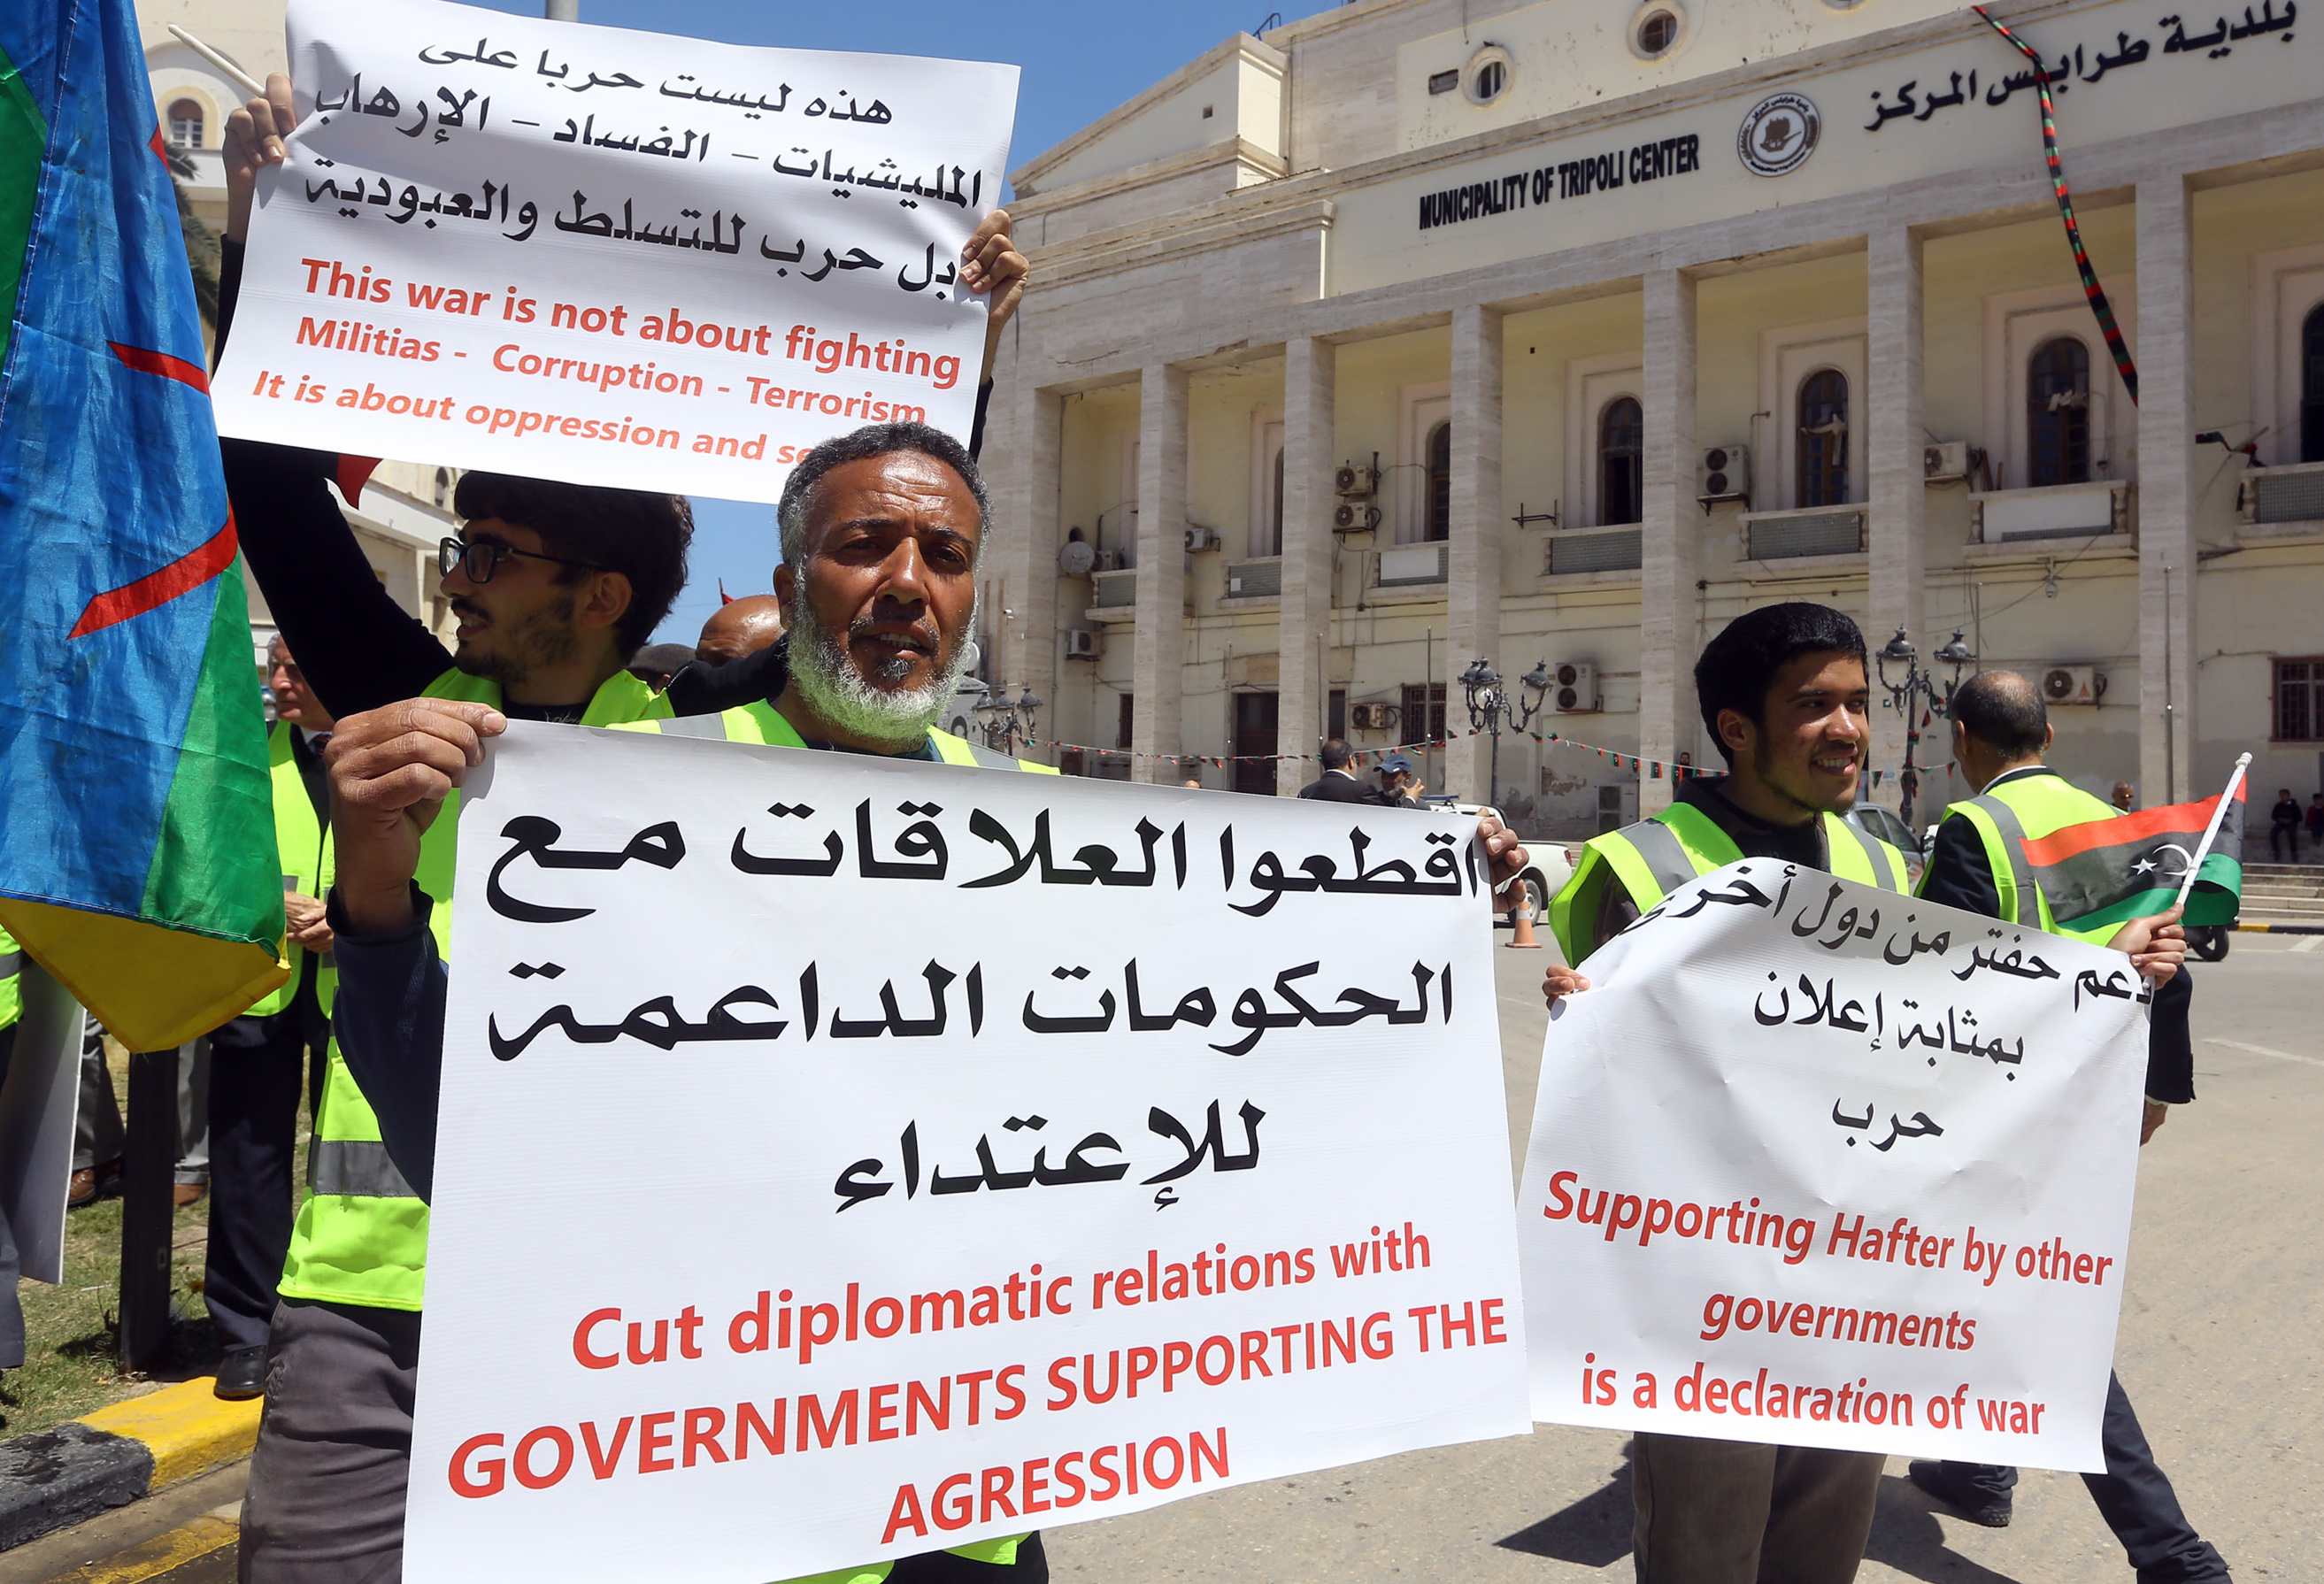 Des manifestants libyens tiennent des pancartes contre ce qu’ils appellent une intervention étrangère en Libye, lors d’une manifestation devant la mairie de Tripoli, le 16 avril 2019 (AFP)